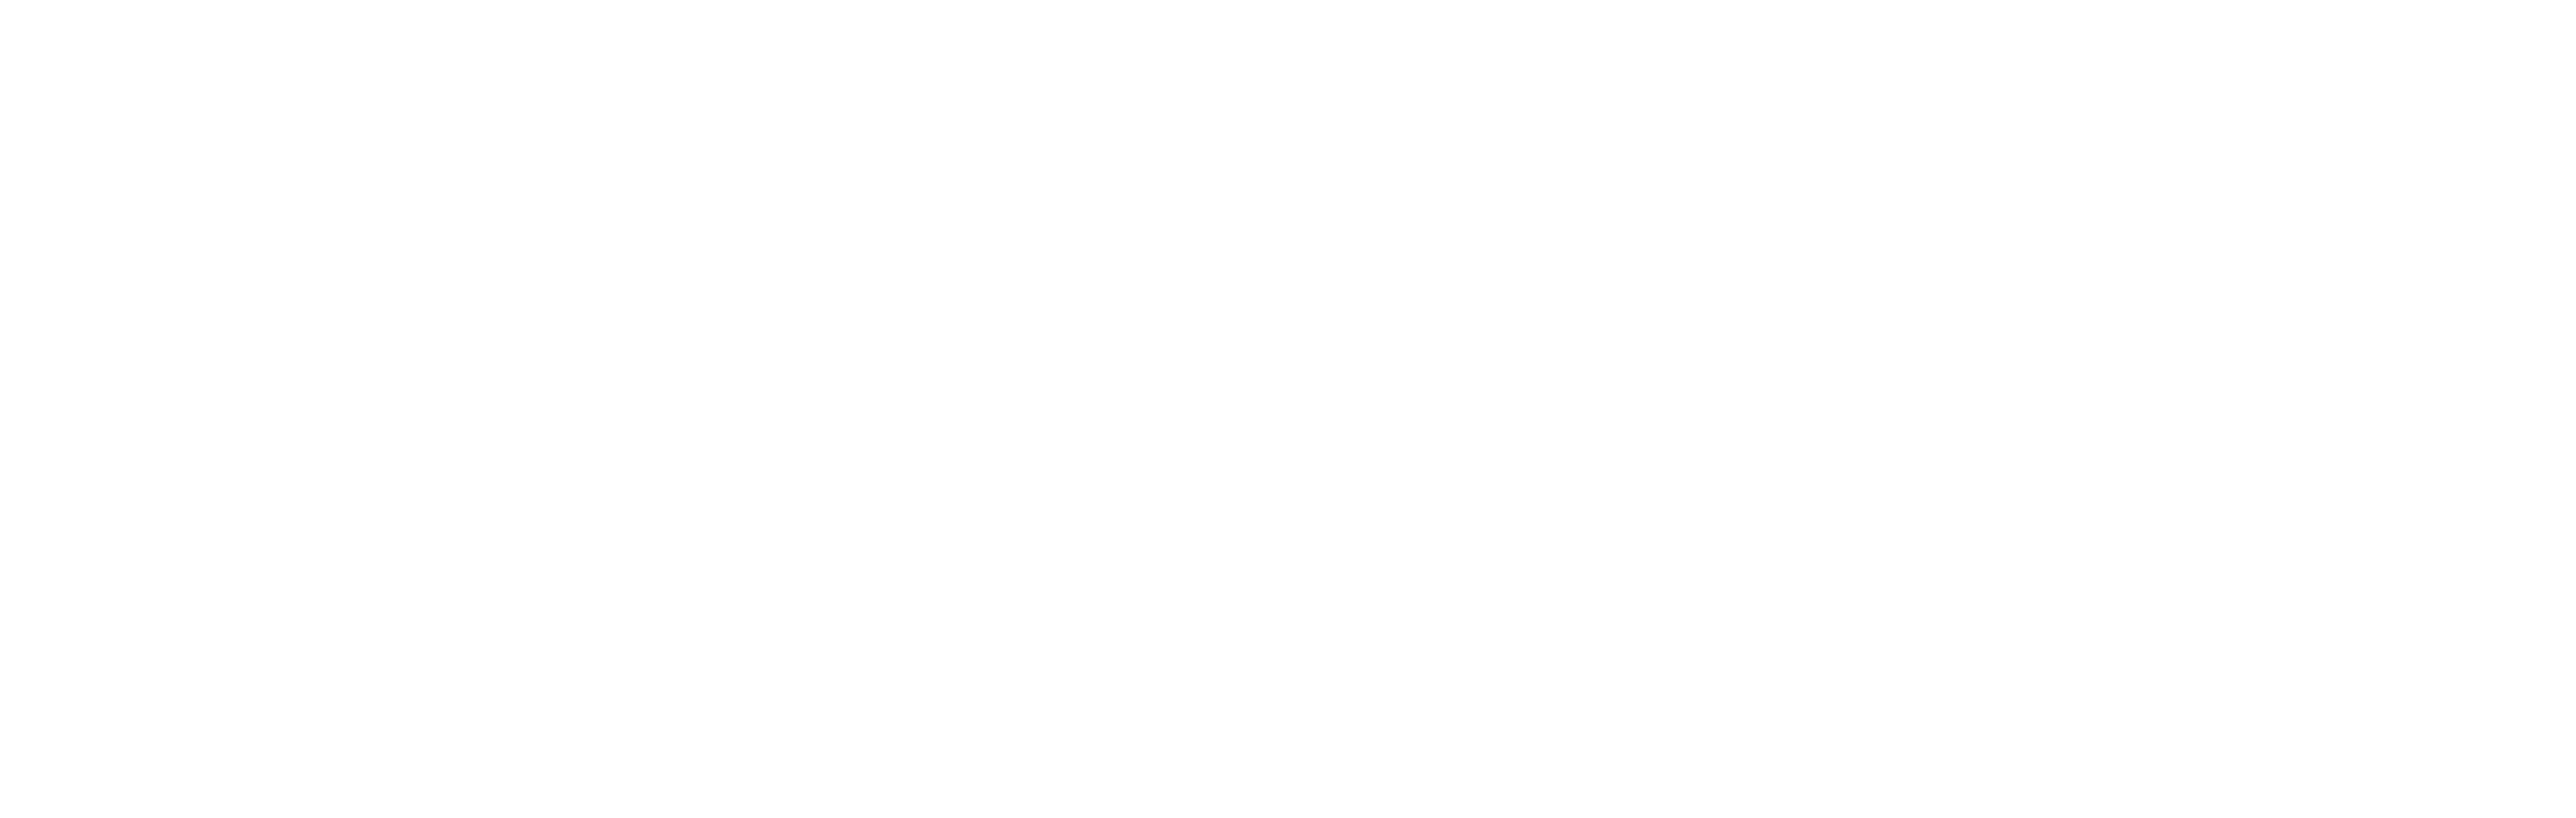 AniCura Vetamic Clínica Veterinaria logo